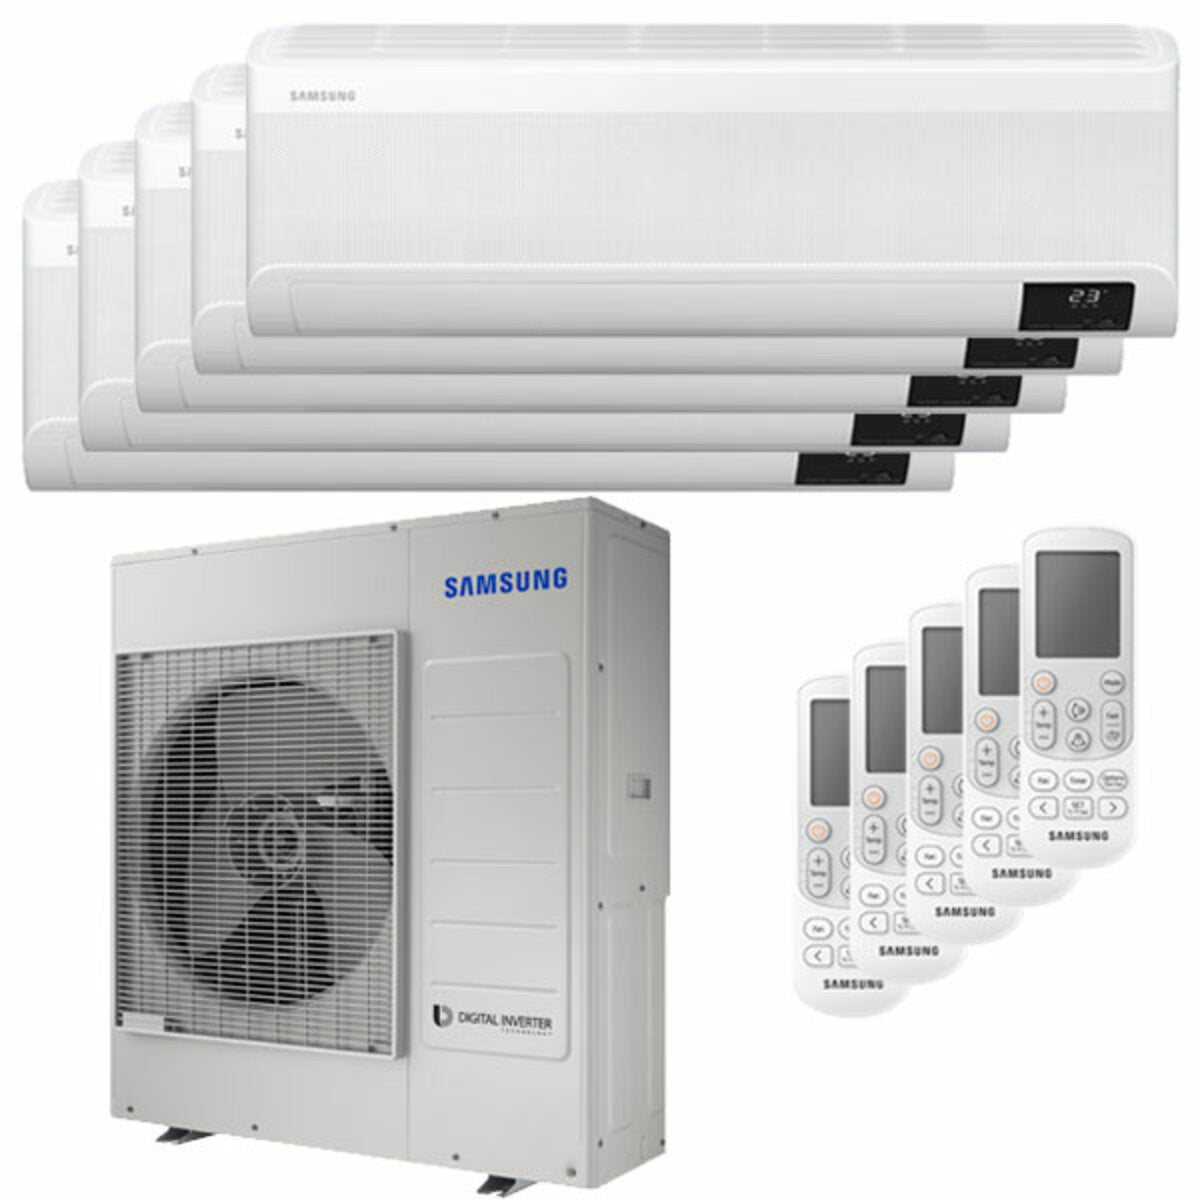 Samsung windfree Klimaanlage Avant Penta Split 7000 + 7000 + 9000 + 12000 + 12000 BTU Inverter A++ WLAN Außengerät 10,0 kW